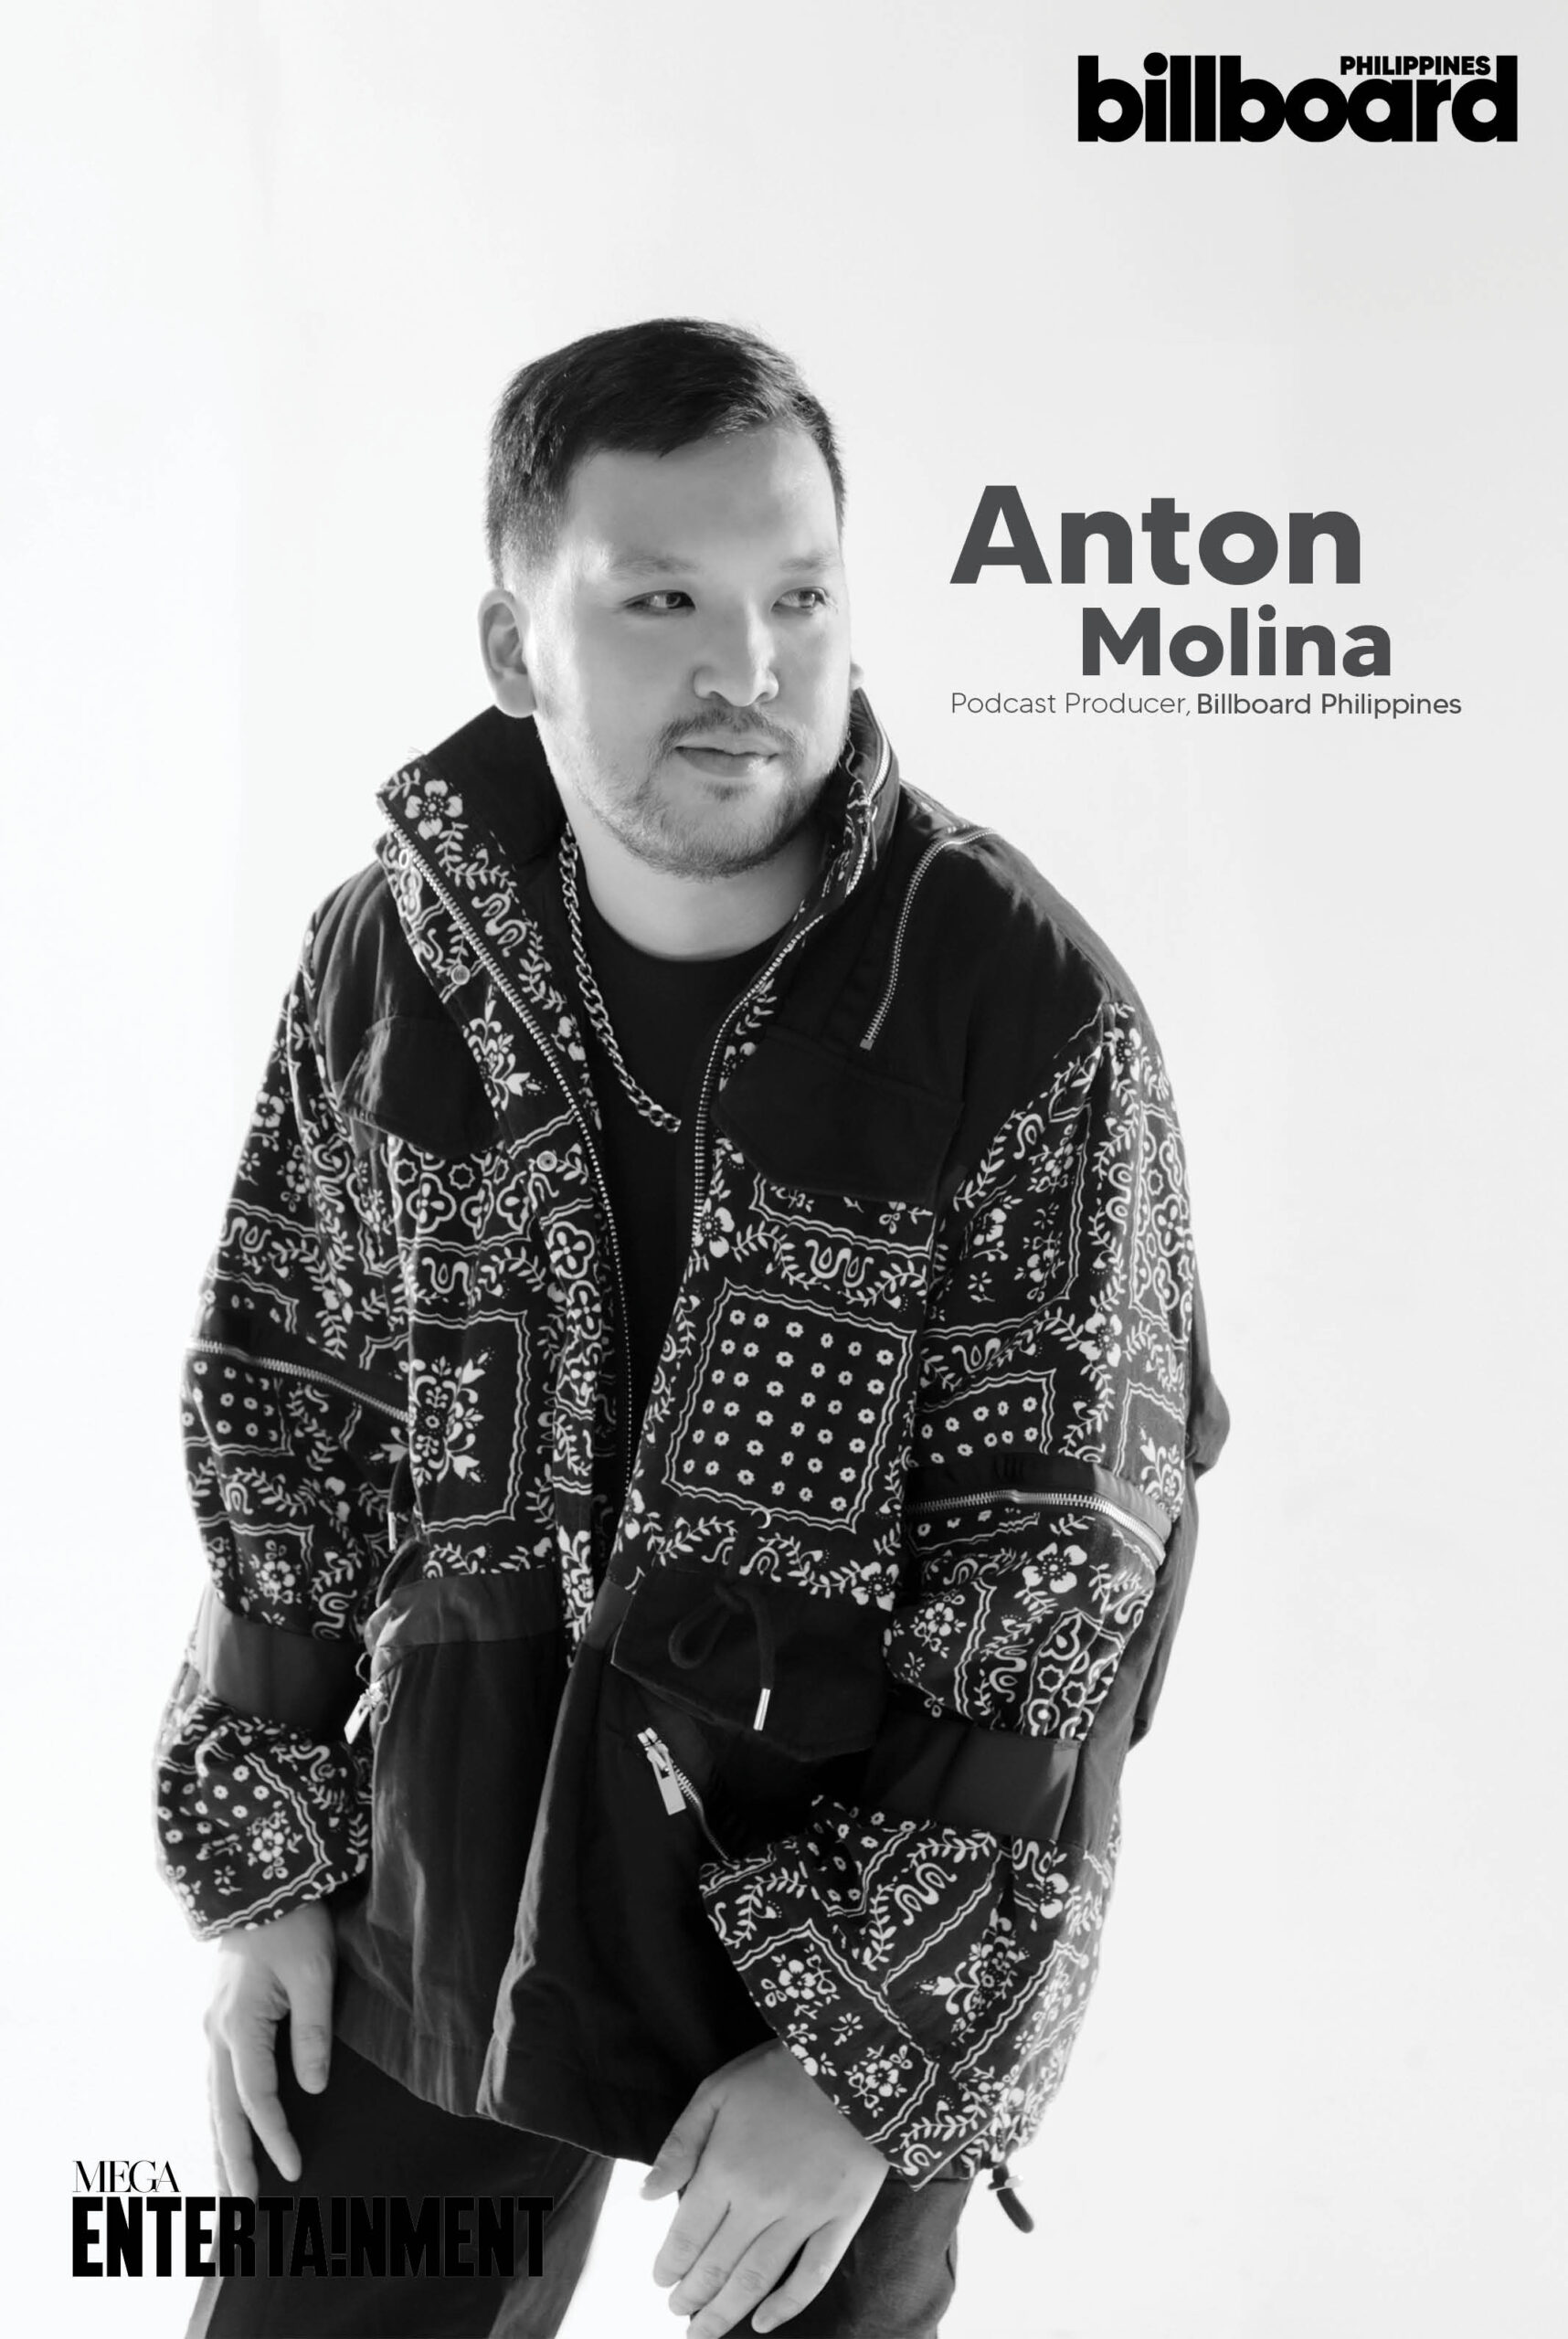 Anton Molina, Podcast Producer